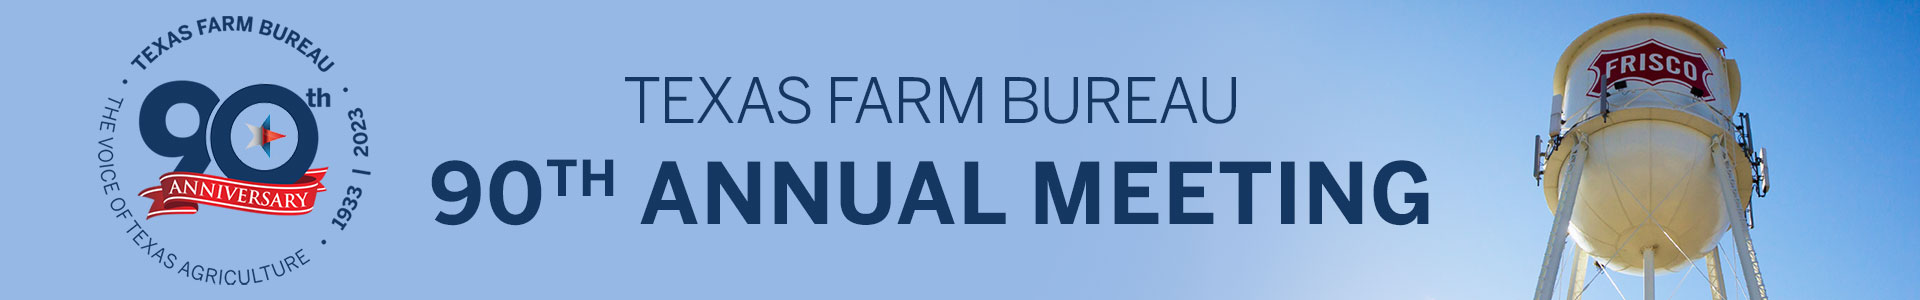 Texas Farm Bureau 89th Annual Meeting